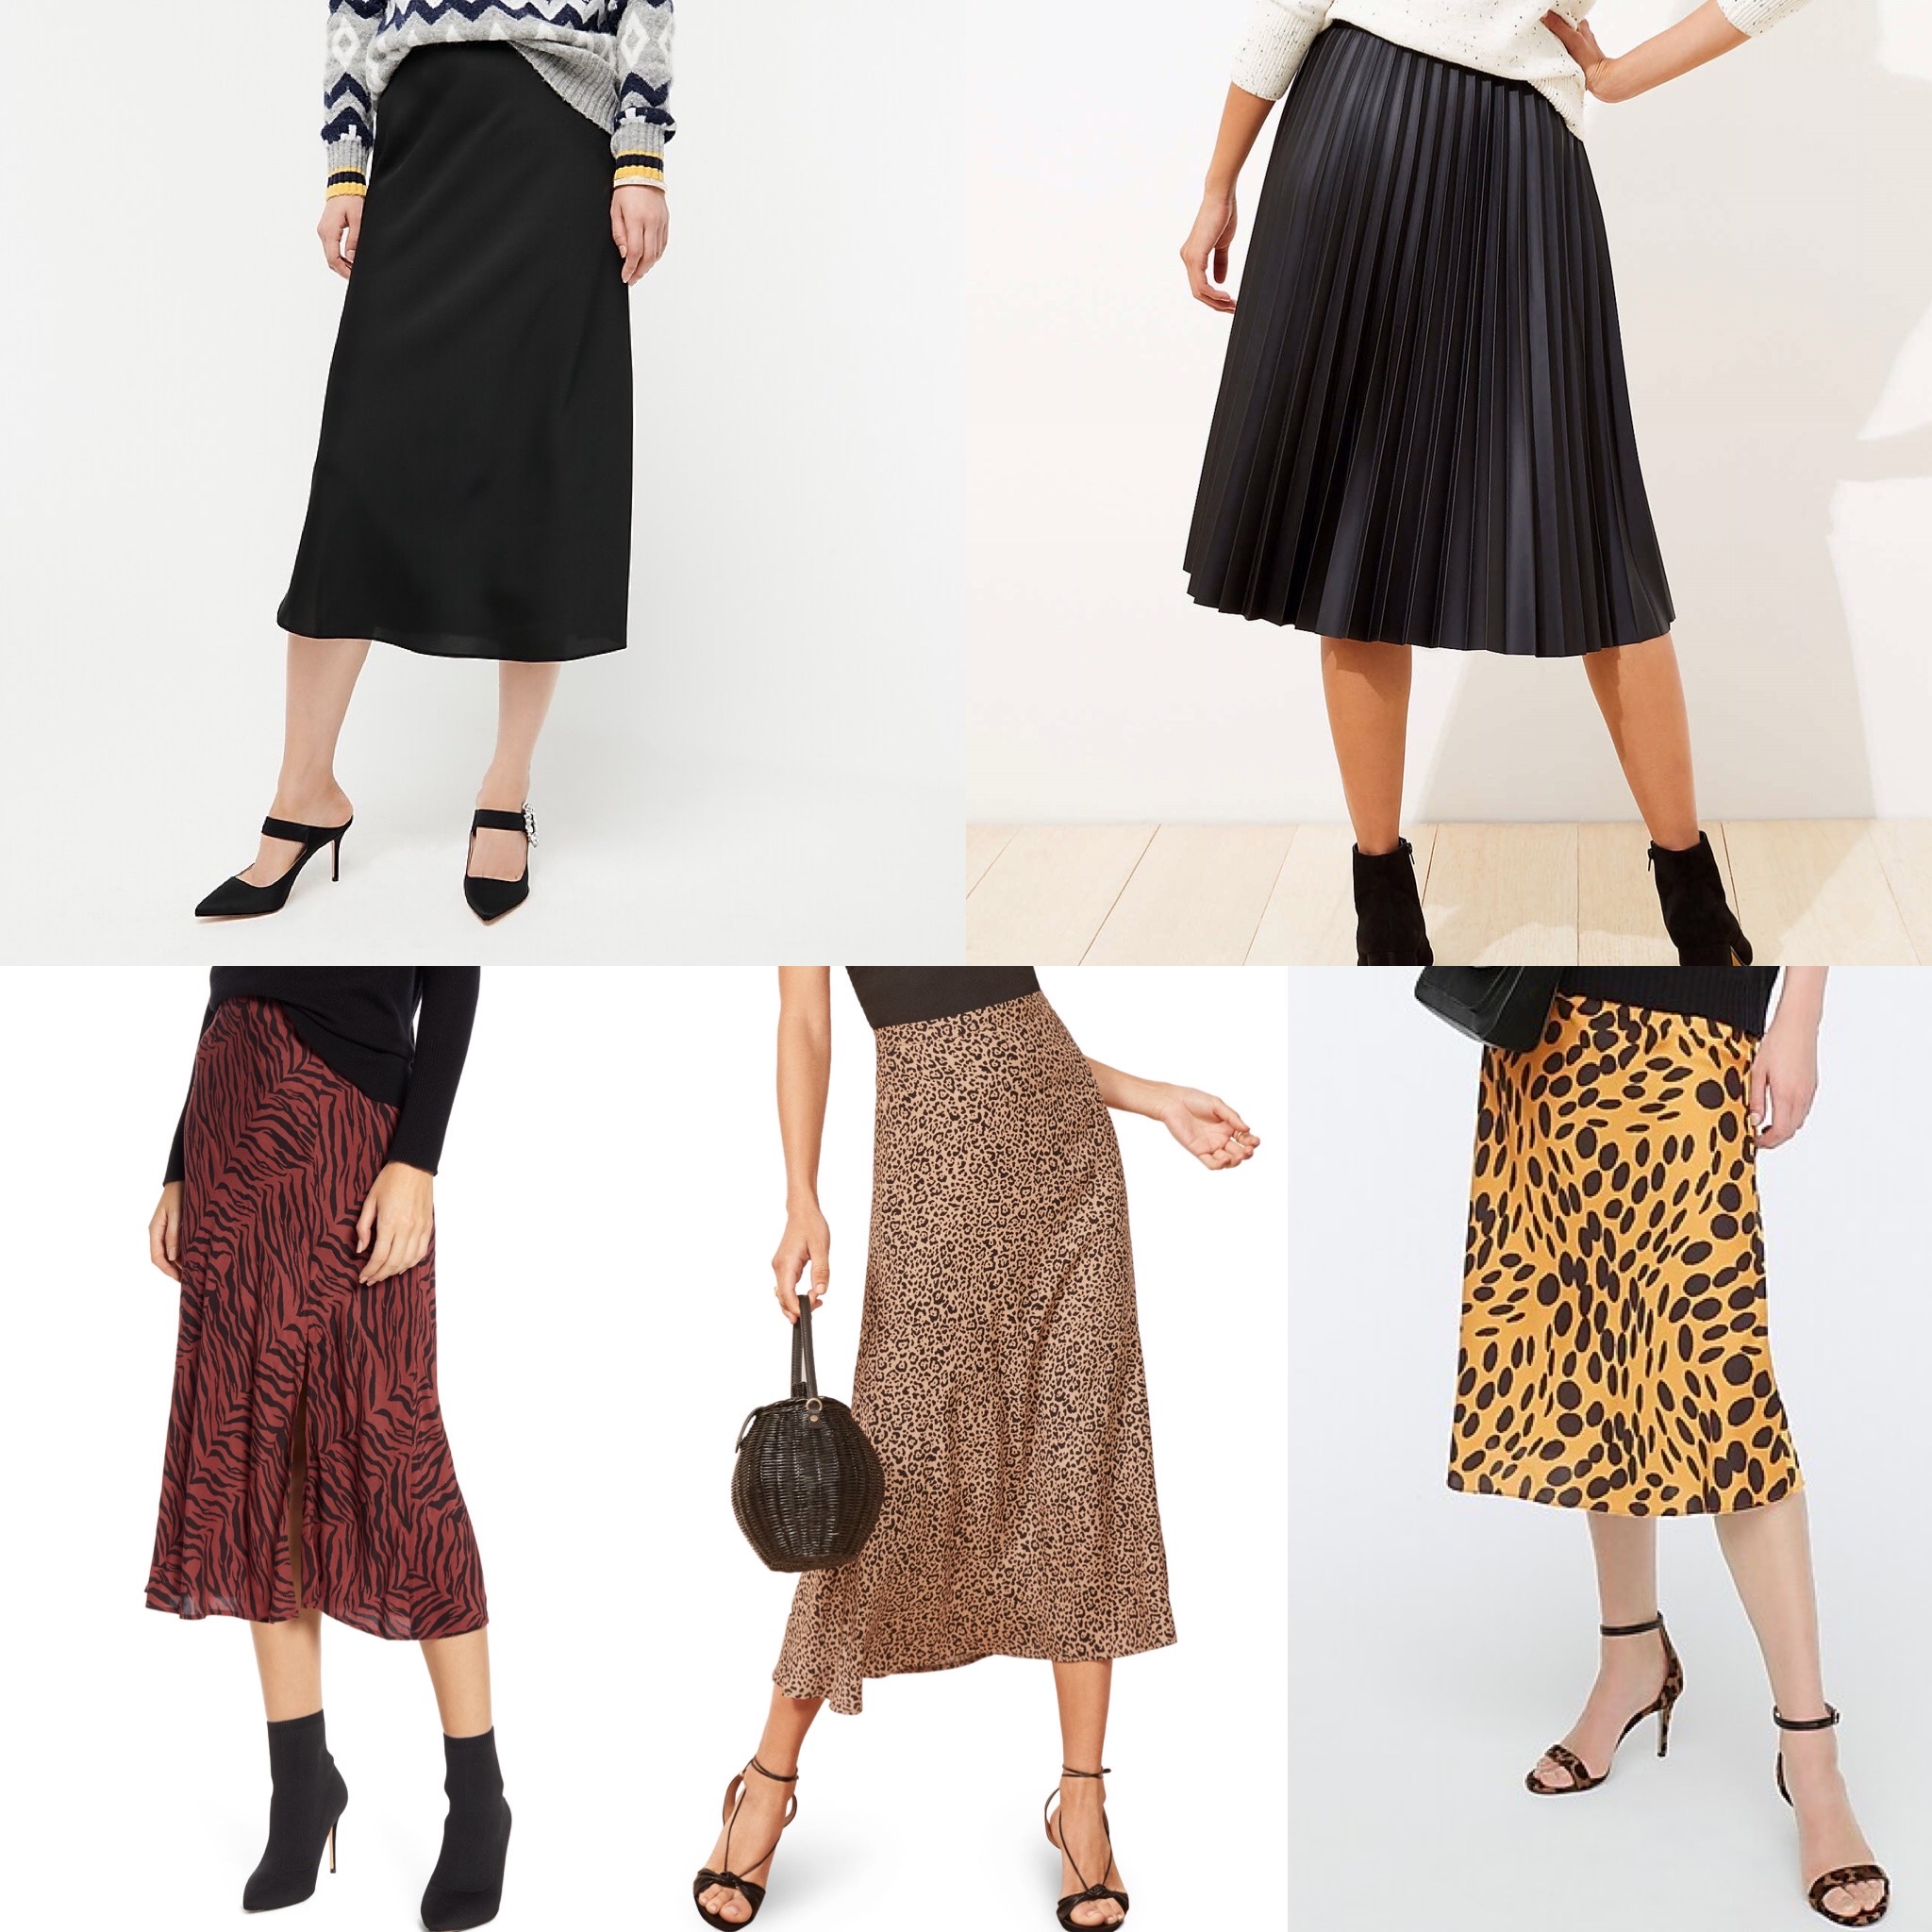 One Midi Skirt, Three Ways - Effortless Style Nashville